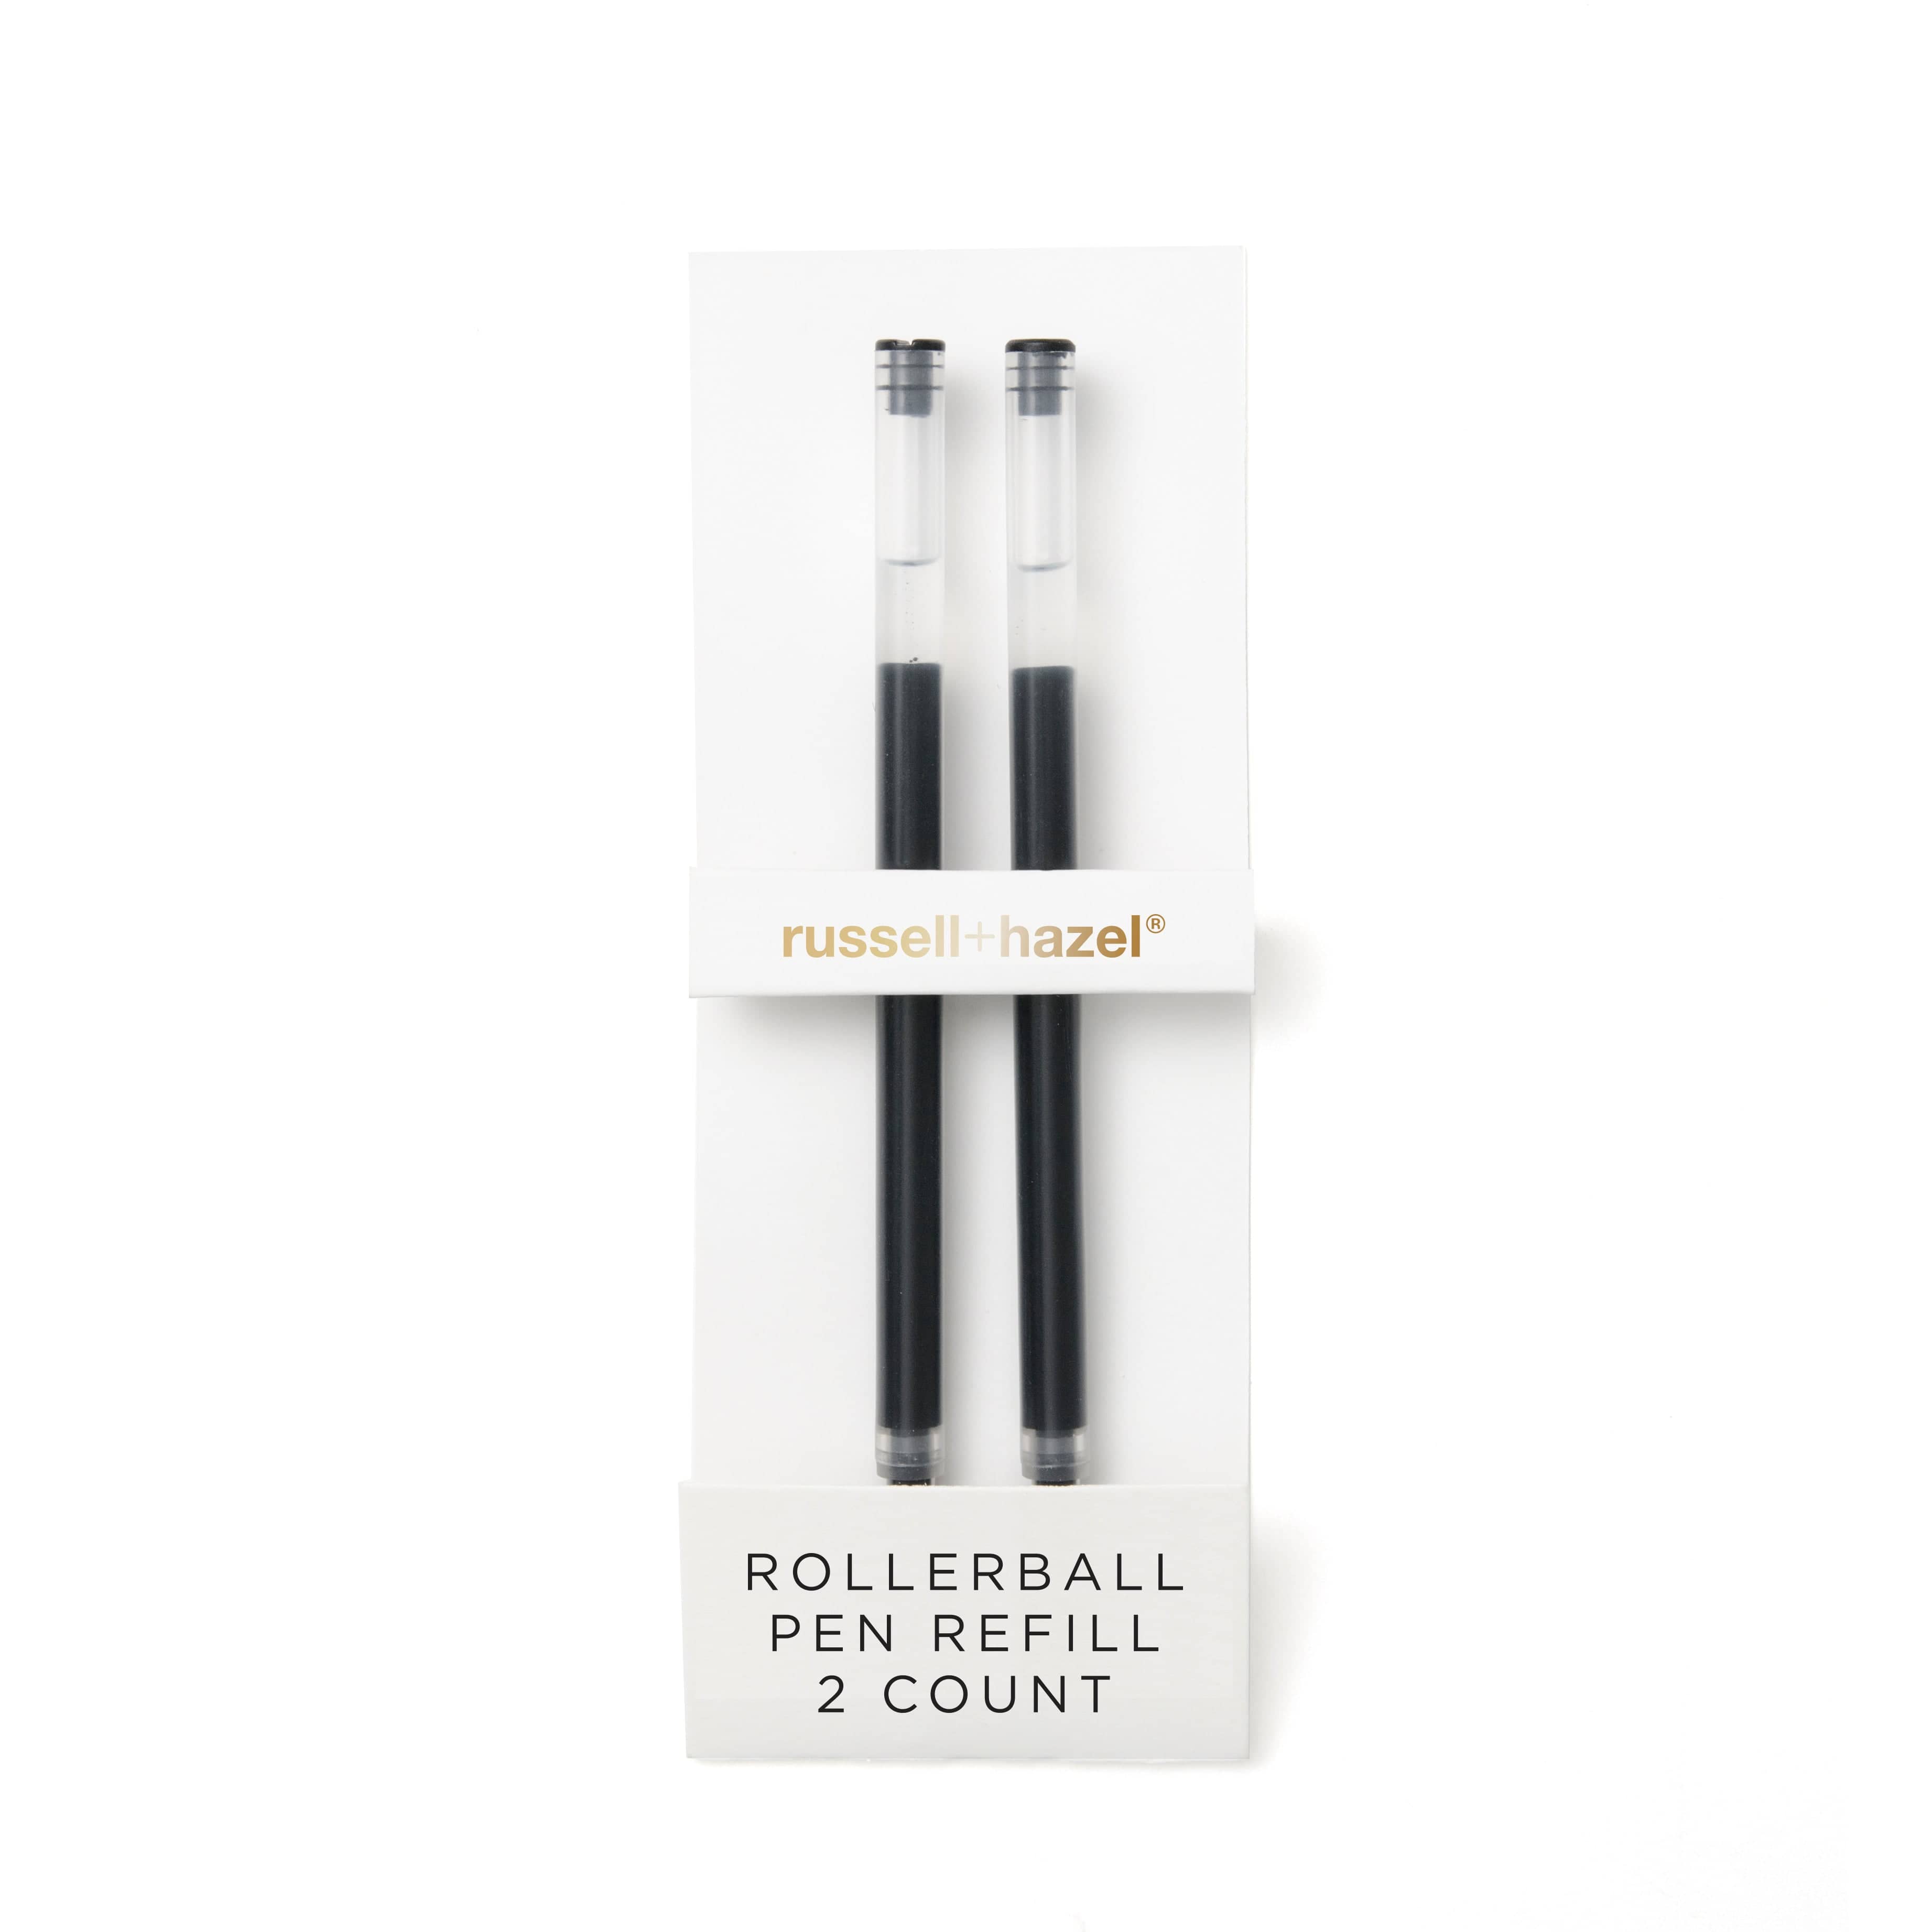 russell+hazel Black Rollerball Pen Refill, 2 Count